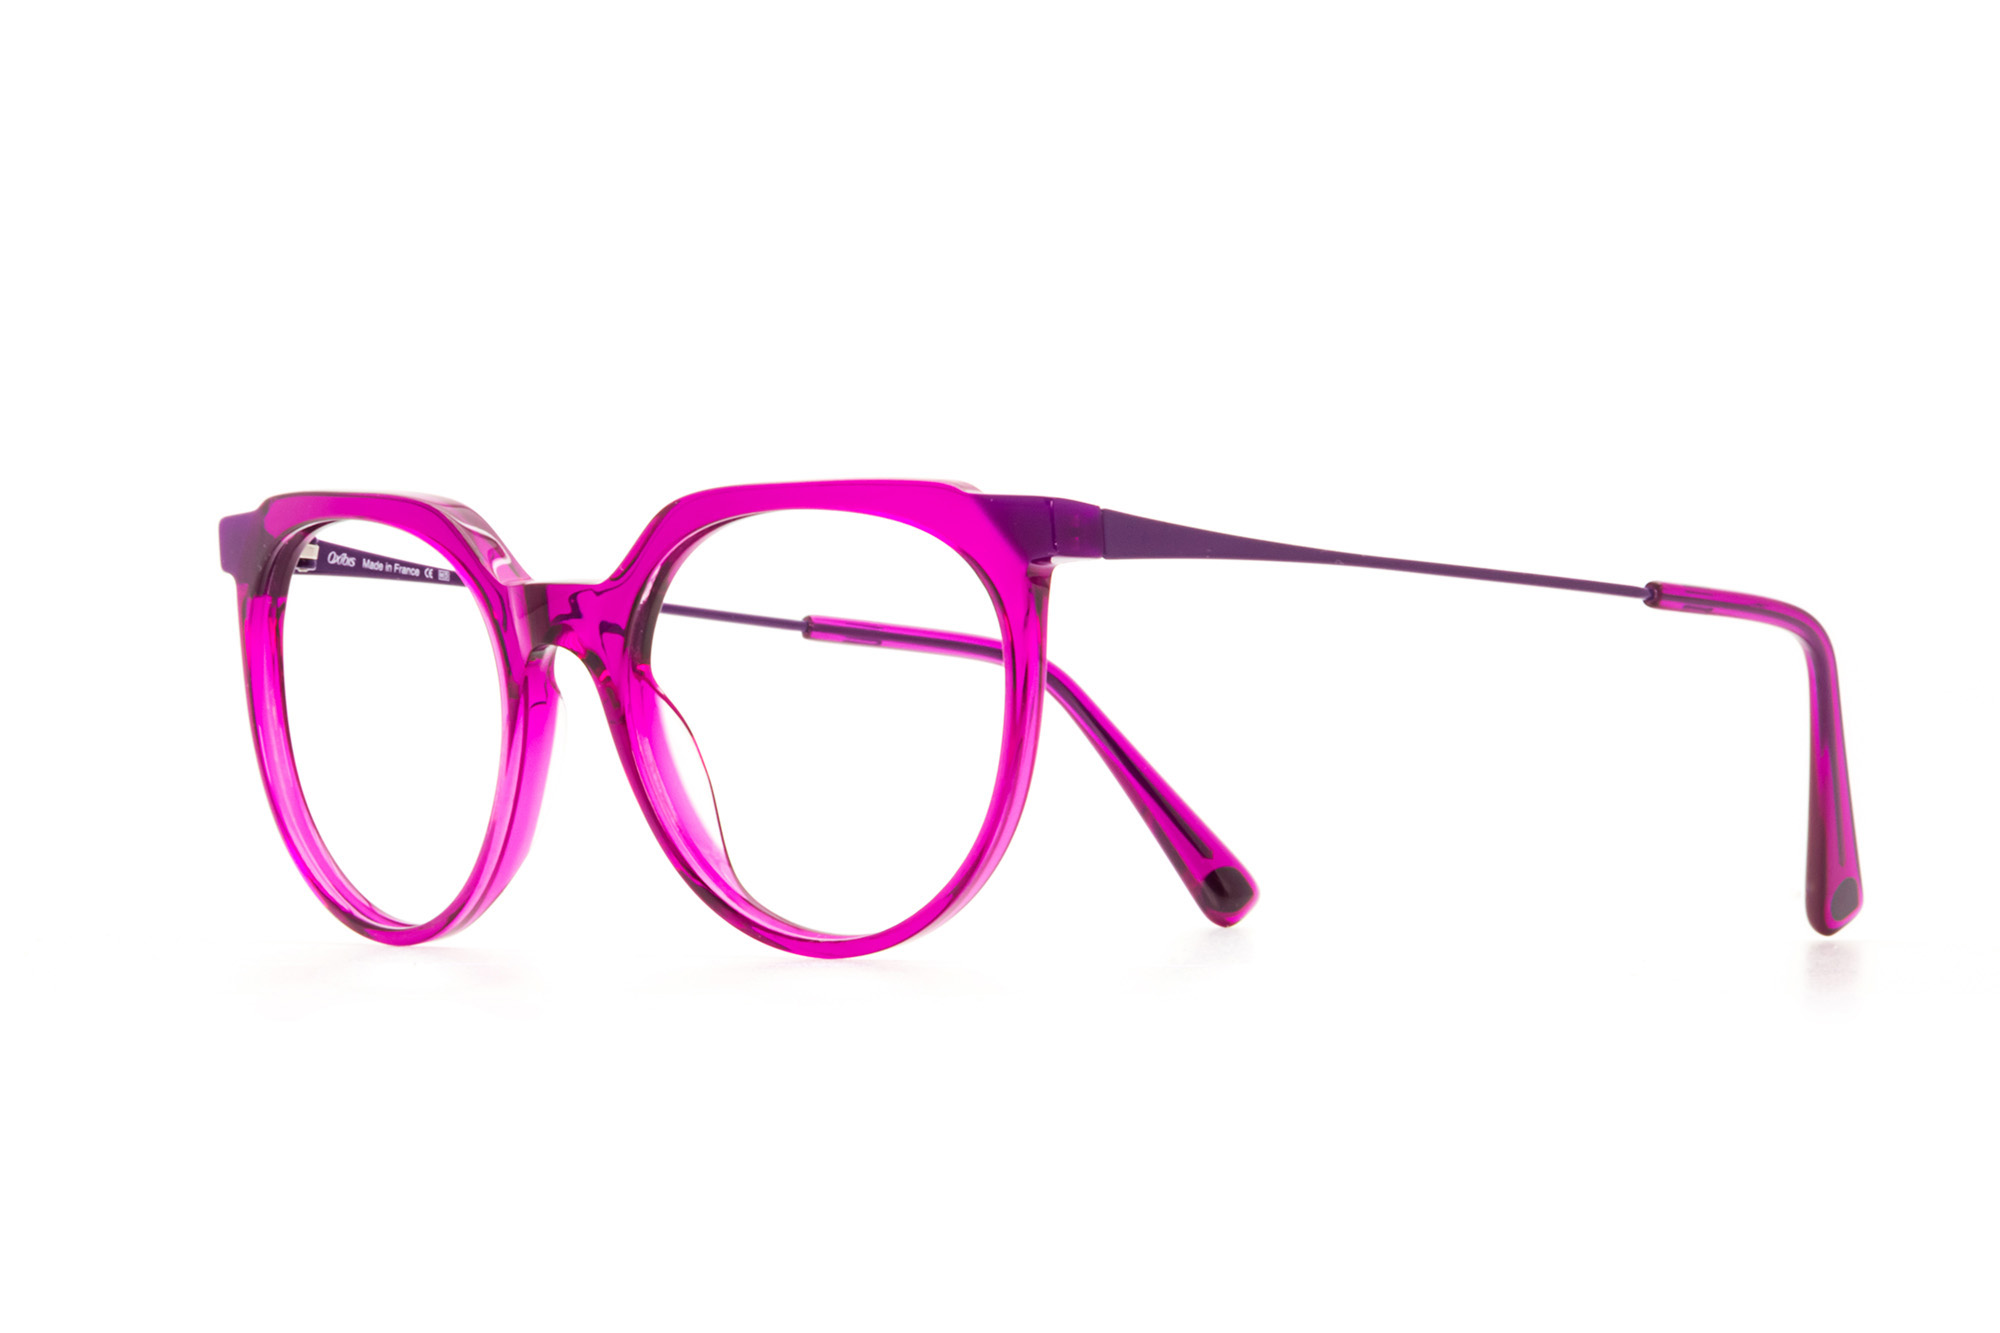 Kullanıma hazır optik tarzda işlenmiş camları ve optik uyumlu çerçevesiyle Oxibis Tango TA1C1 orta ekartman mor renkli cat eye model kadın gözlüğünü optisyen veya gözlükçülerin sunacağı numarasız veya numaralı cam özelleştirmeleriyle size en yakın gözlükçüden satın alabilirsiniz.